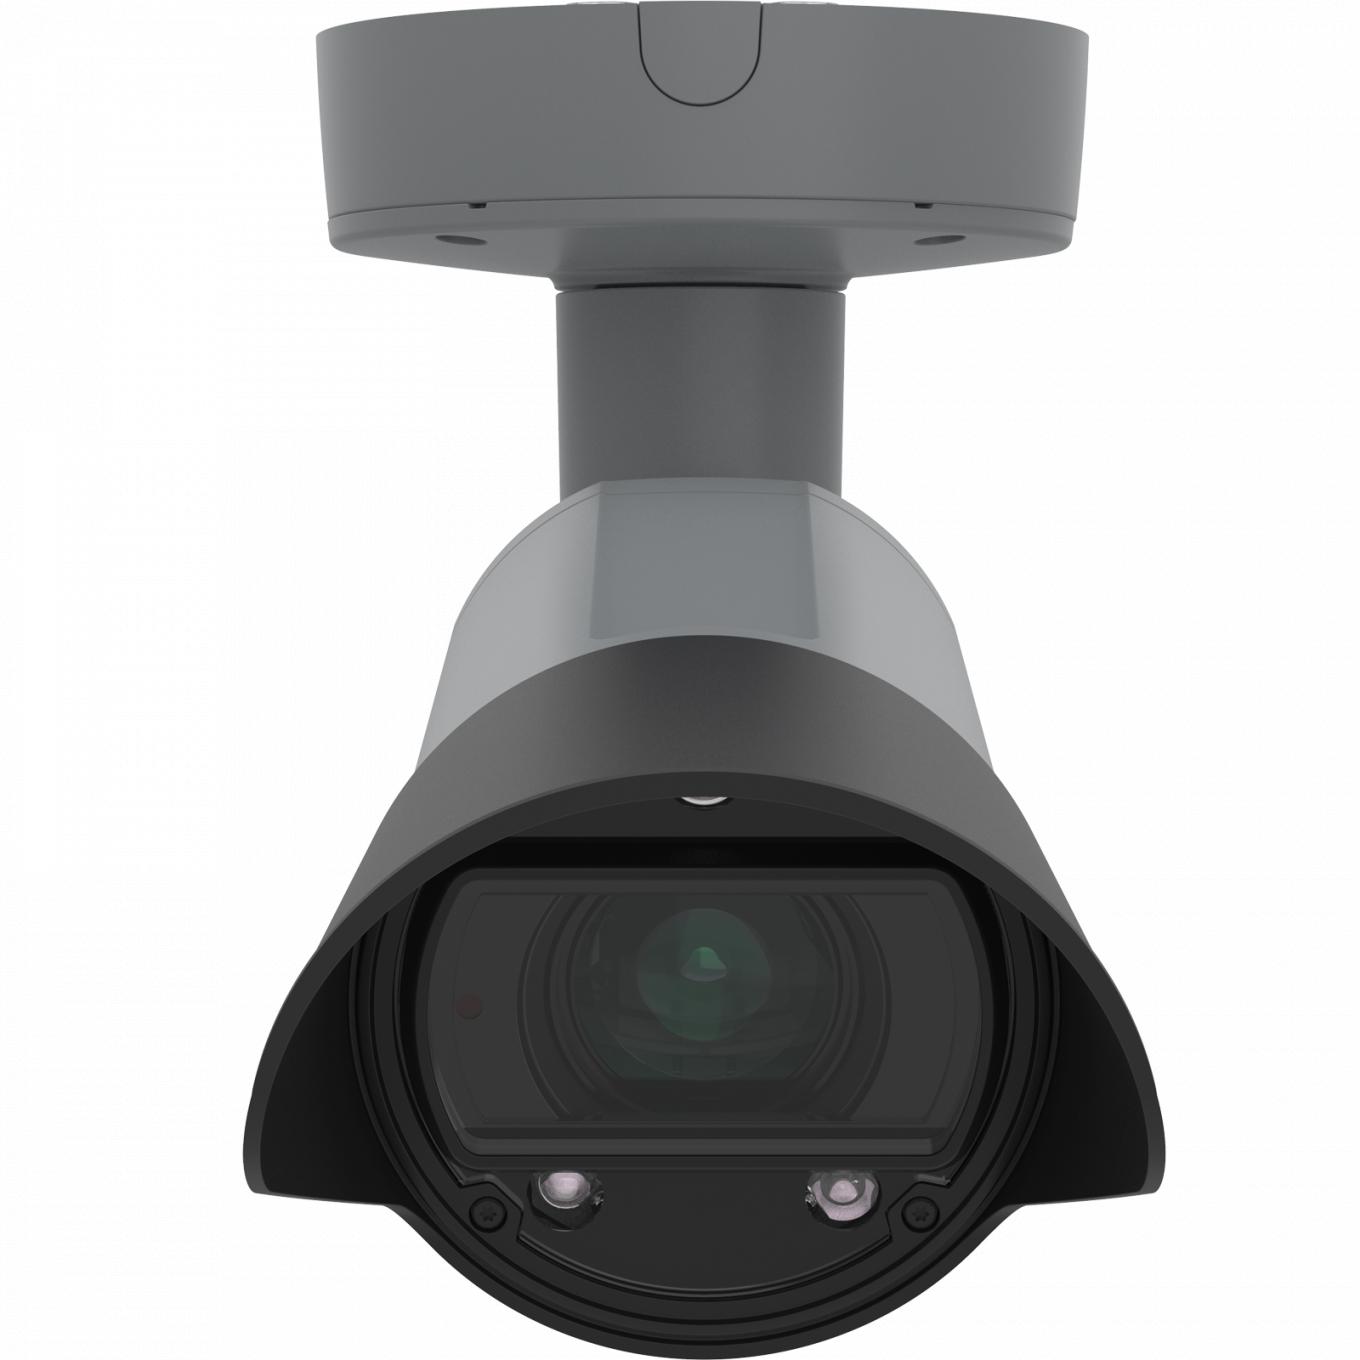 AXIS Q1700-LE License Plate Camera, montée au plafond et vue de face.